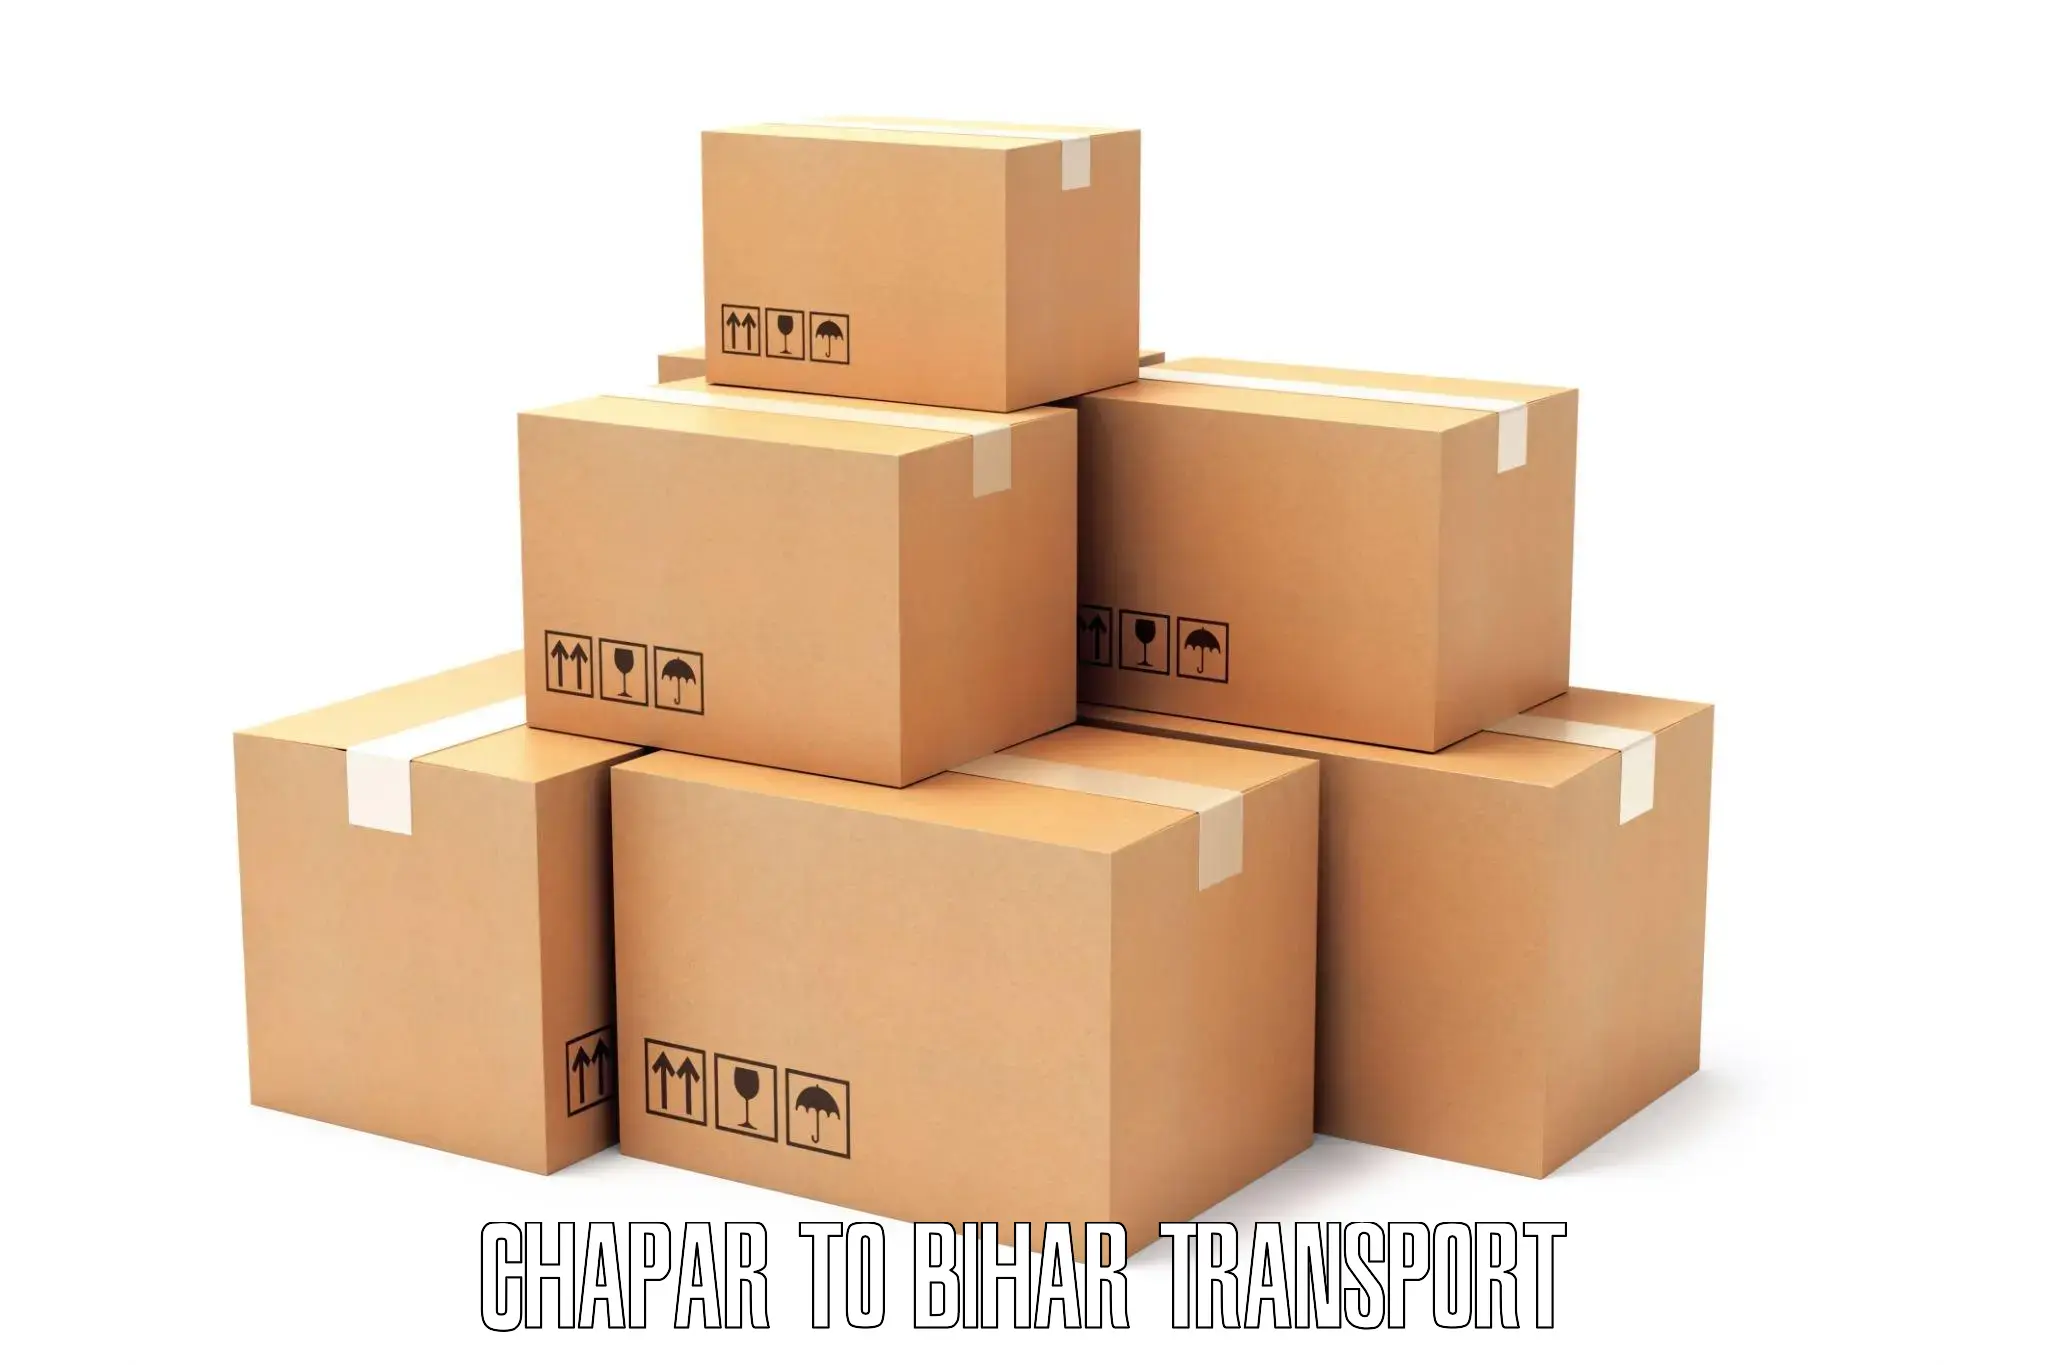 Vehicle transport services Chapar to Dehri